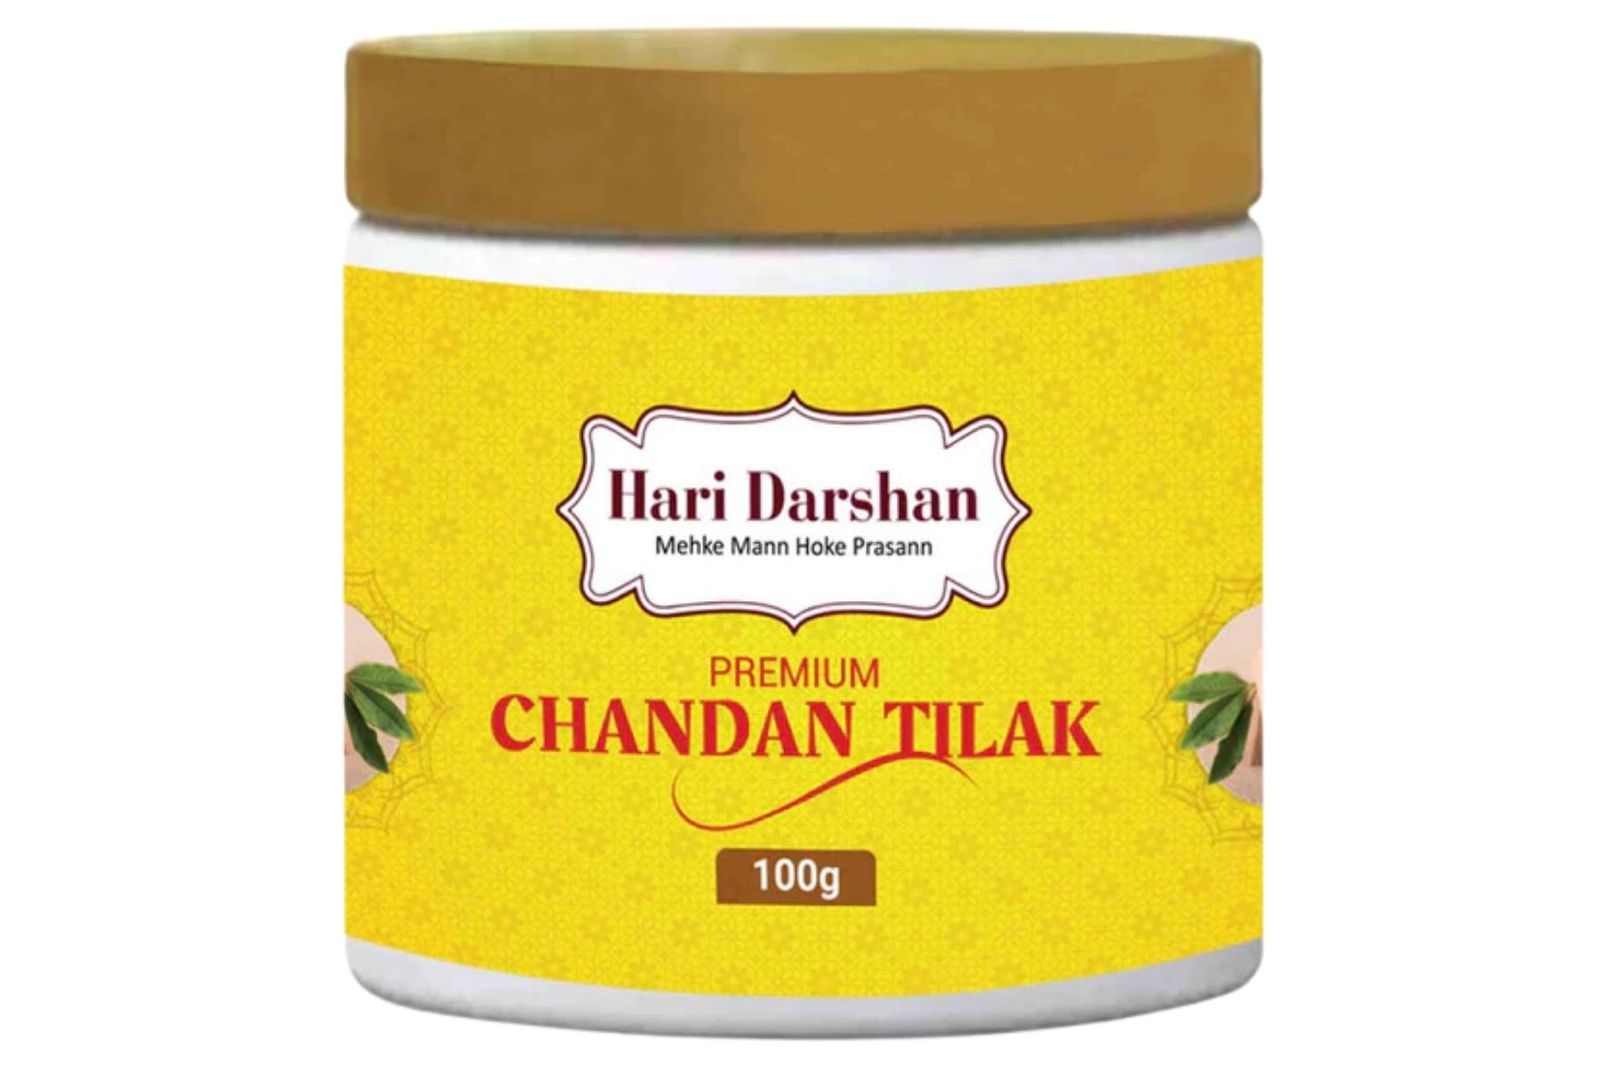 Hari Darshan Premium Chandan Tilak